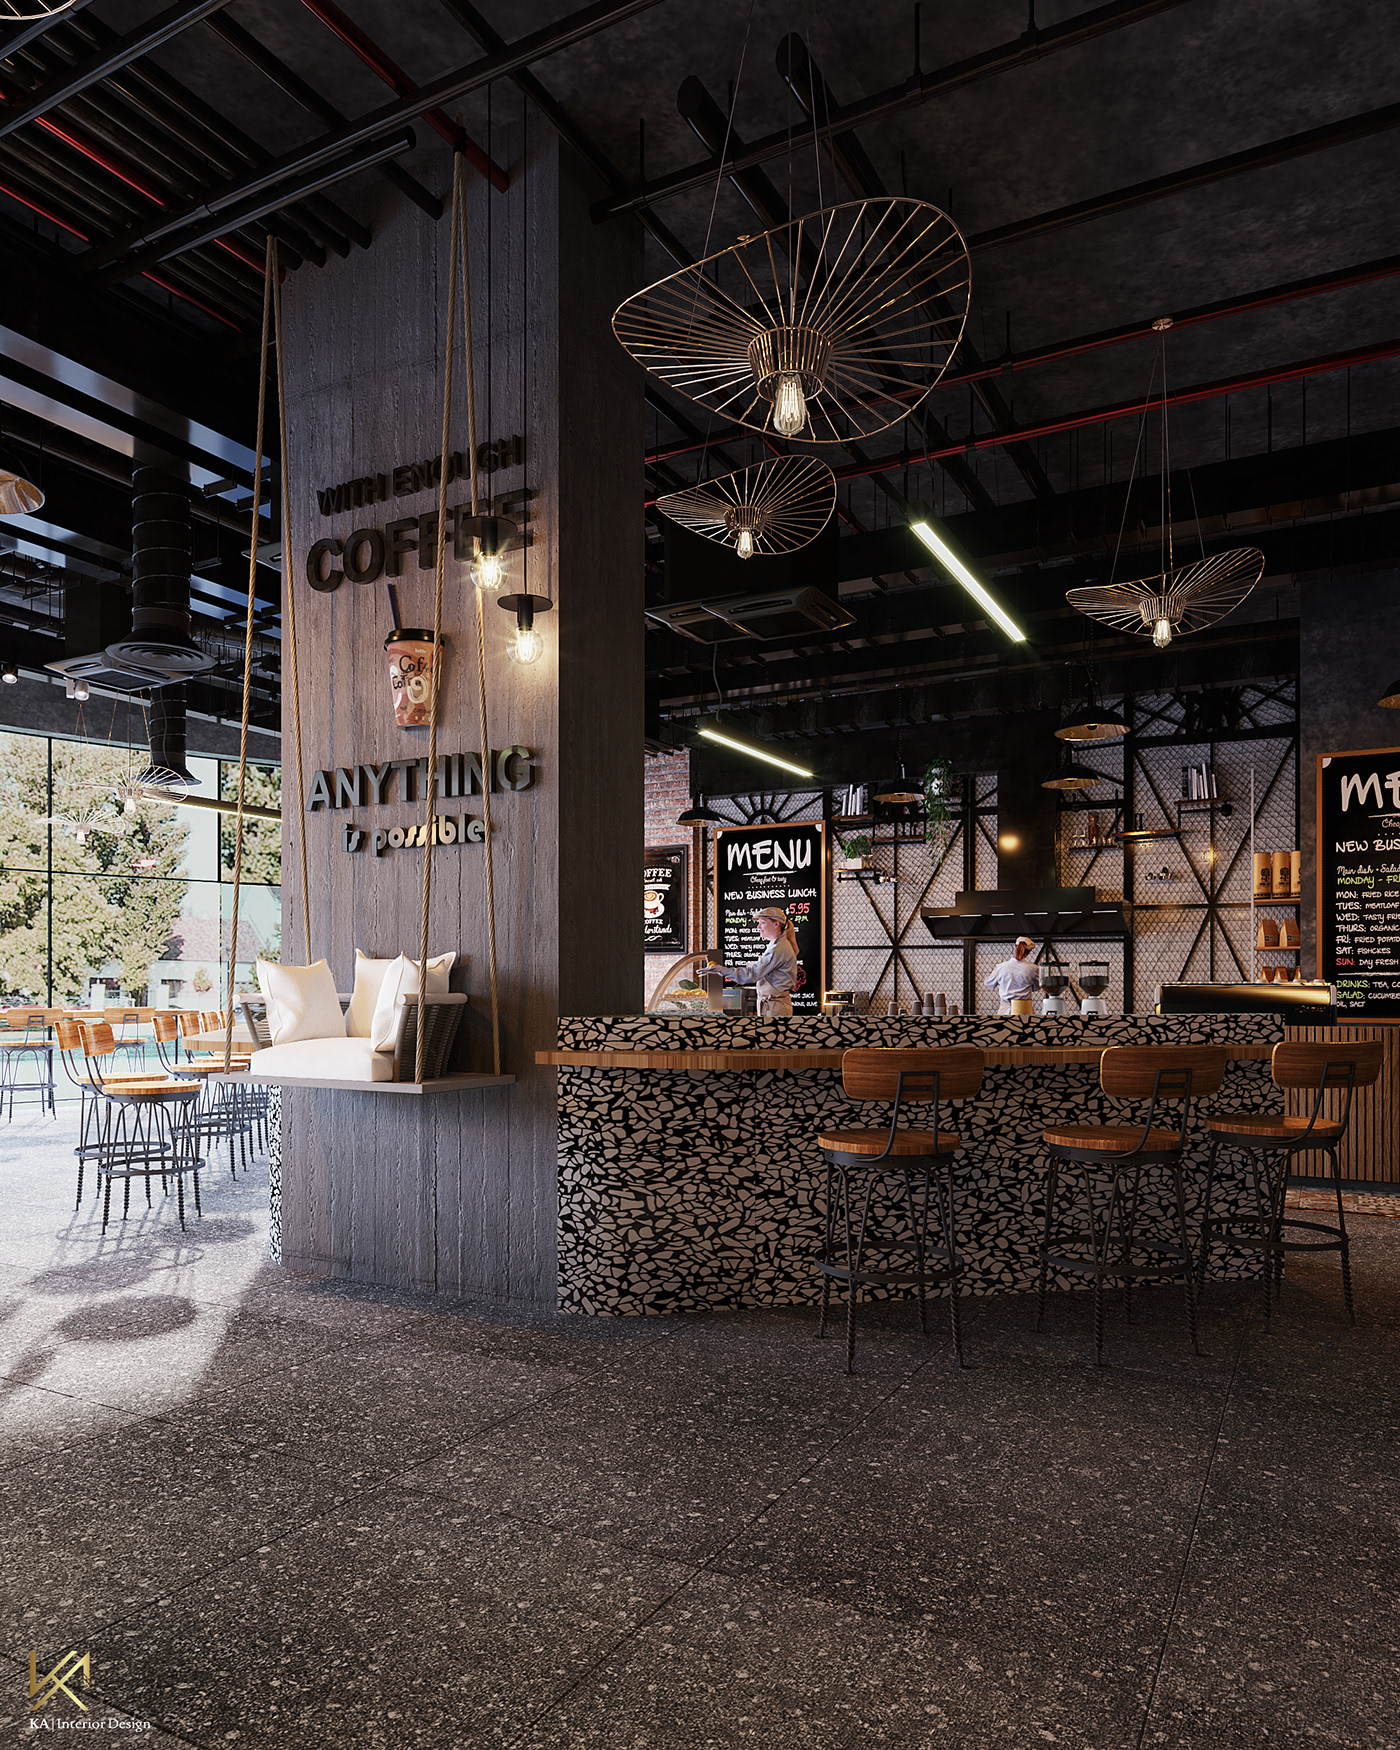 cafe Cafe design Coffee coffee shop design industrial design  Interior interior design  interiordesign restaurant